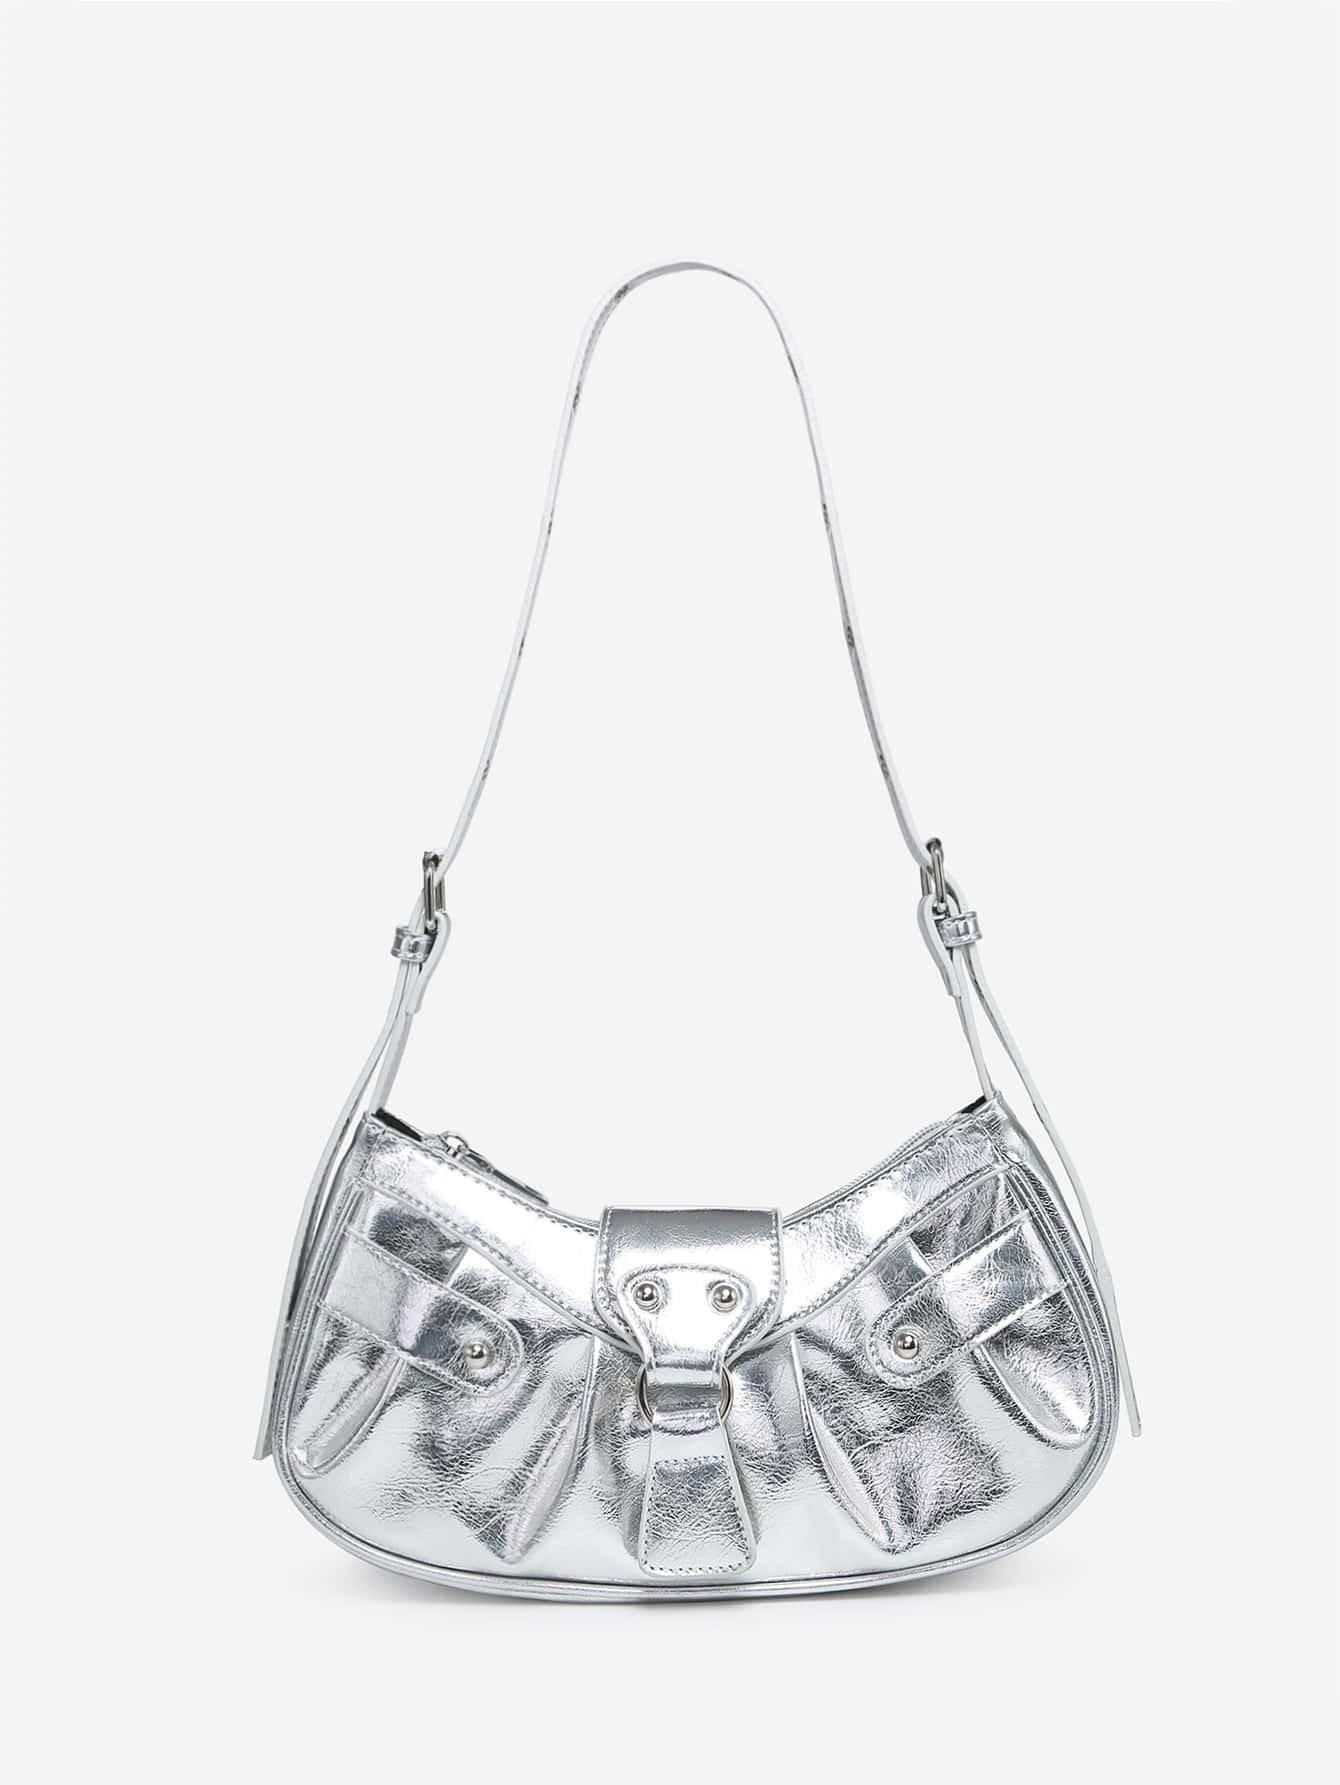 Легкая деловая повседневная сумка с рюшами и тиснением под крокодила с заклепками для девочек-подростков, серебро